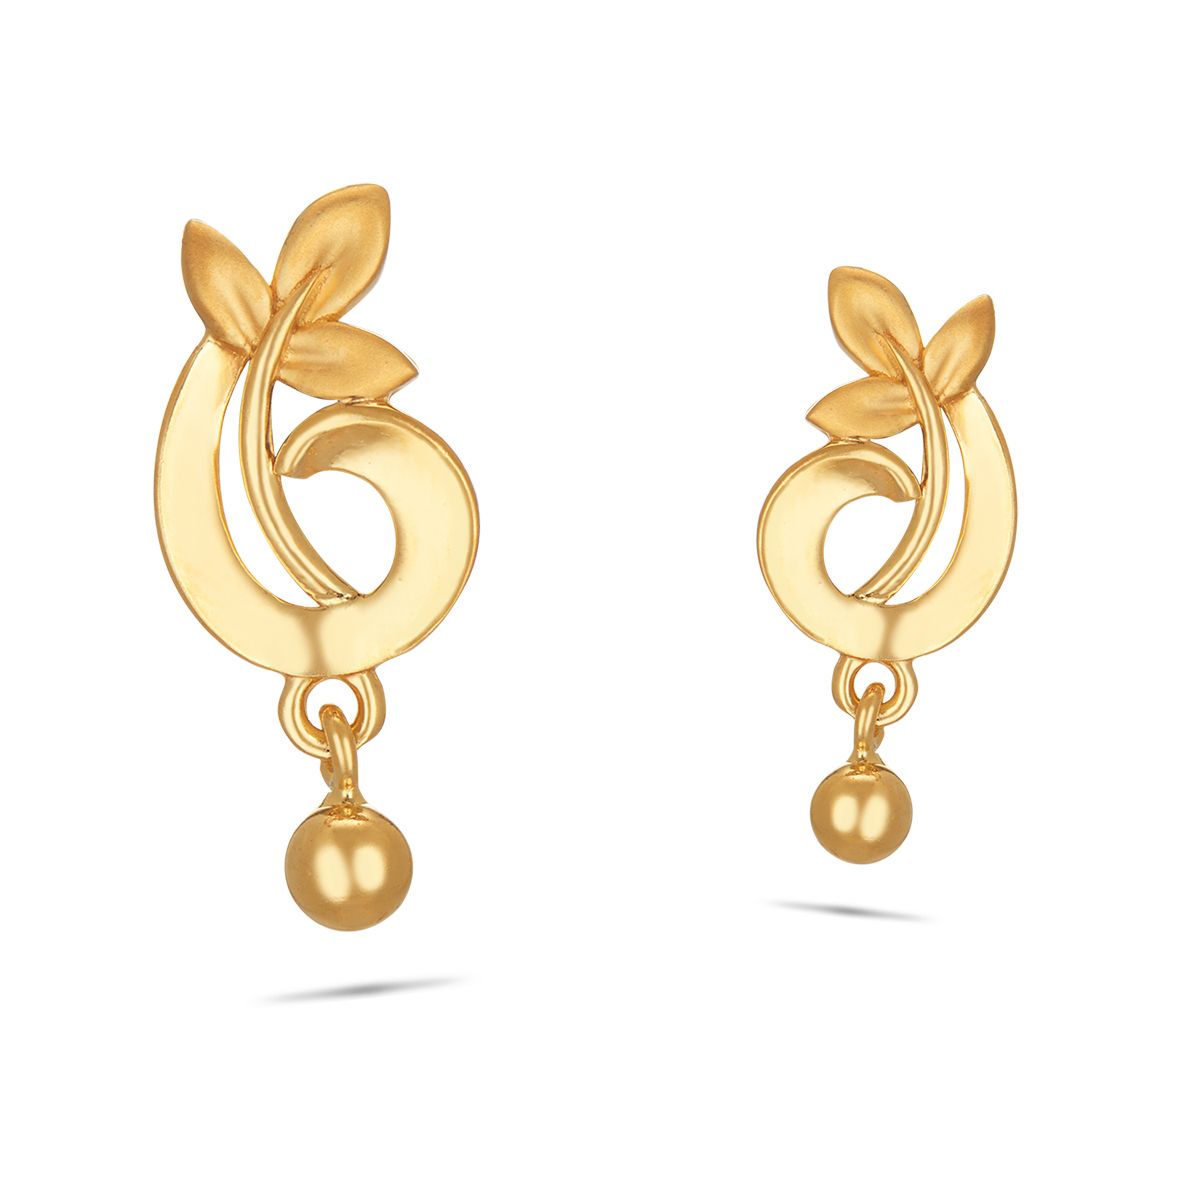 Latest Light Weight Daily Wear Earrings / Simple Daily Wear Gold Earrings  Collection /Gold Earrings/ | Gold earrings models, Simple gold earrings, Simple  earrings